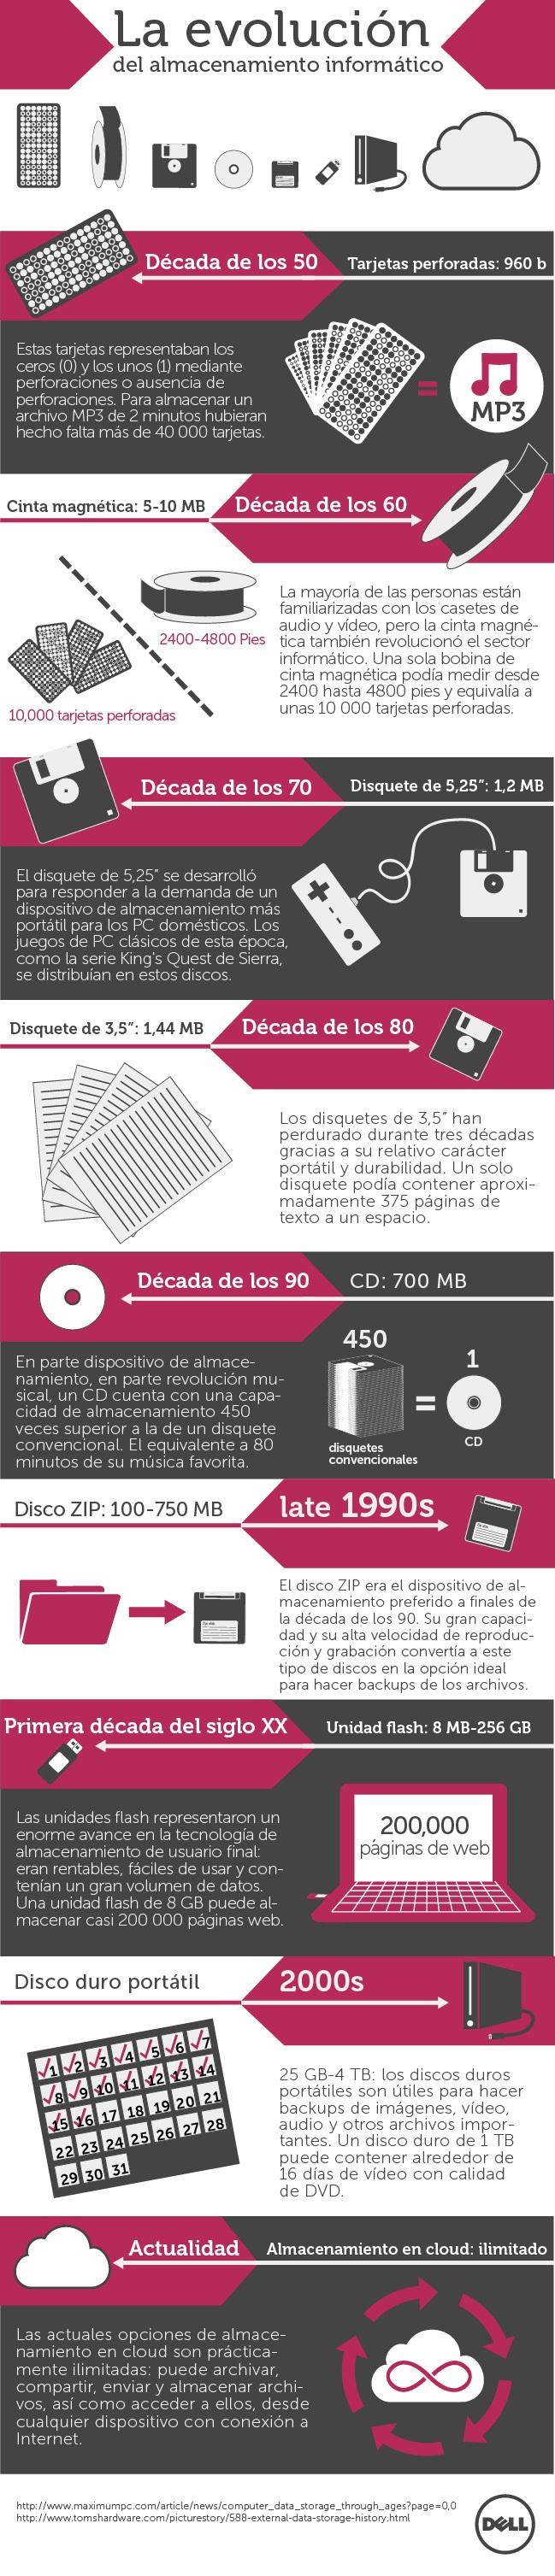 La evolución del almacenamiento informático #Infografía #Internet #Tecnología